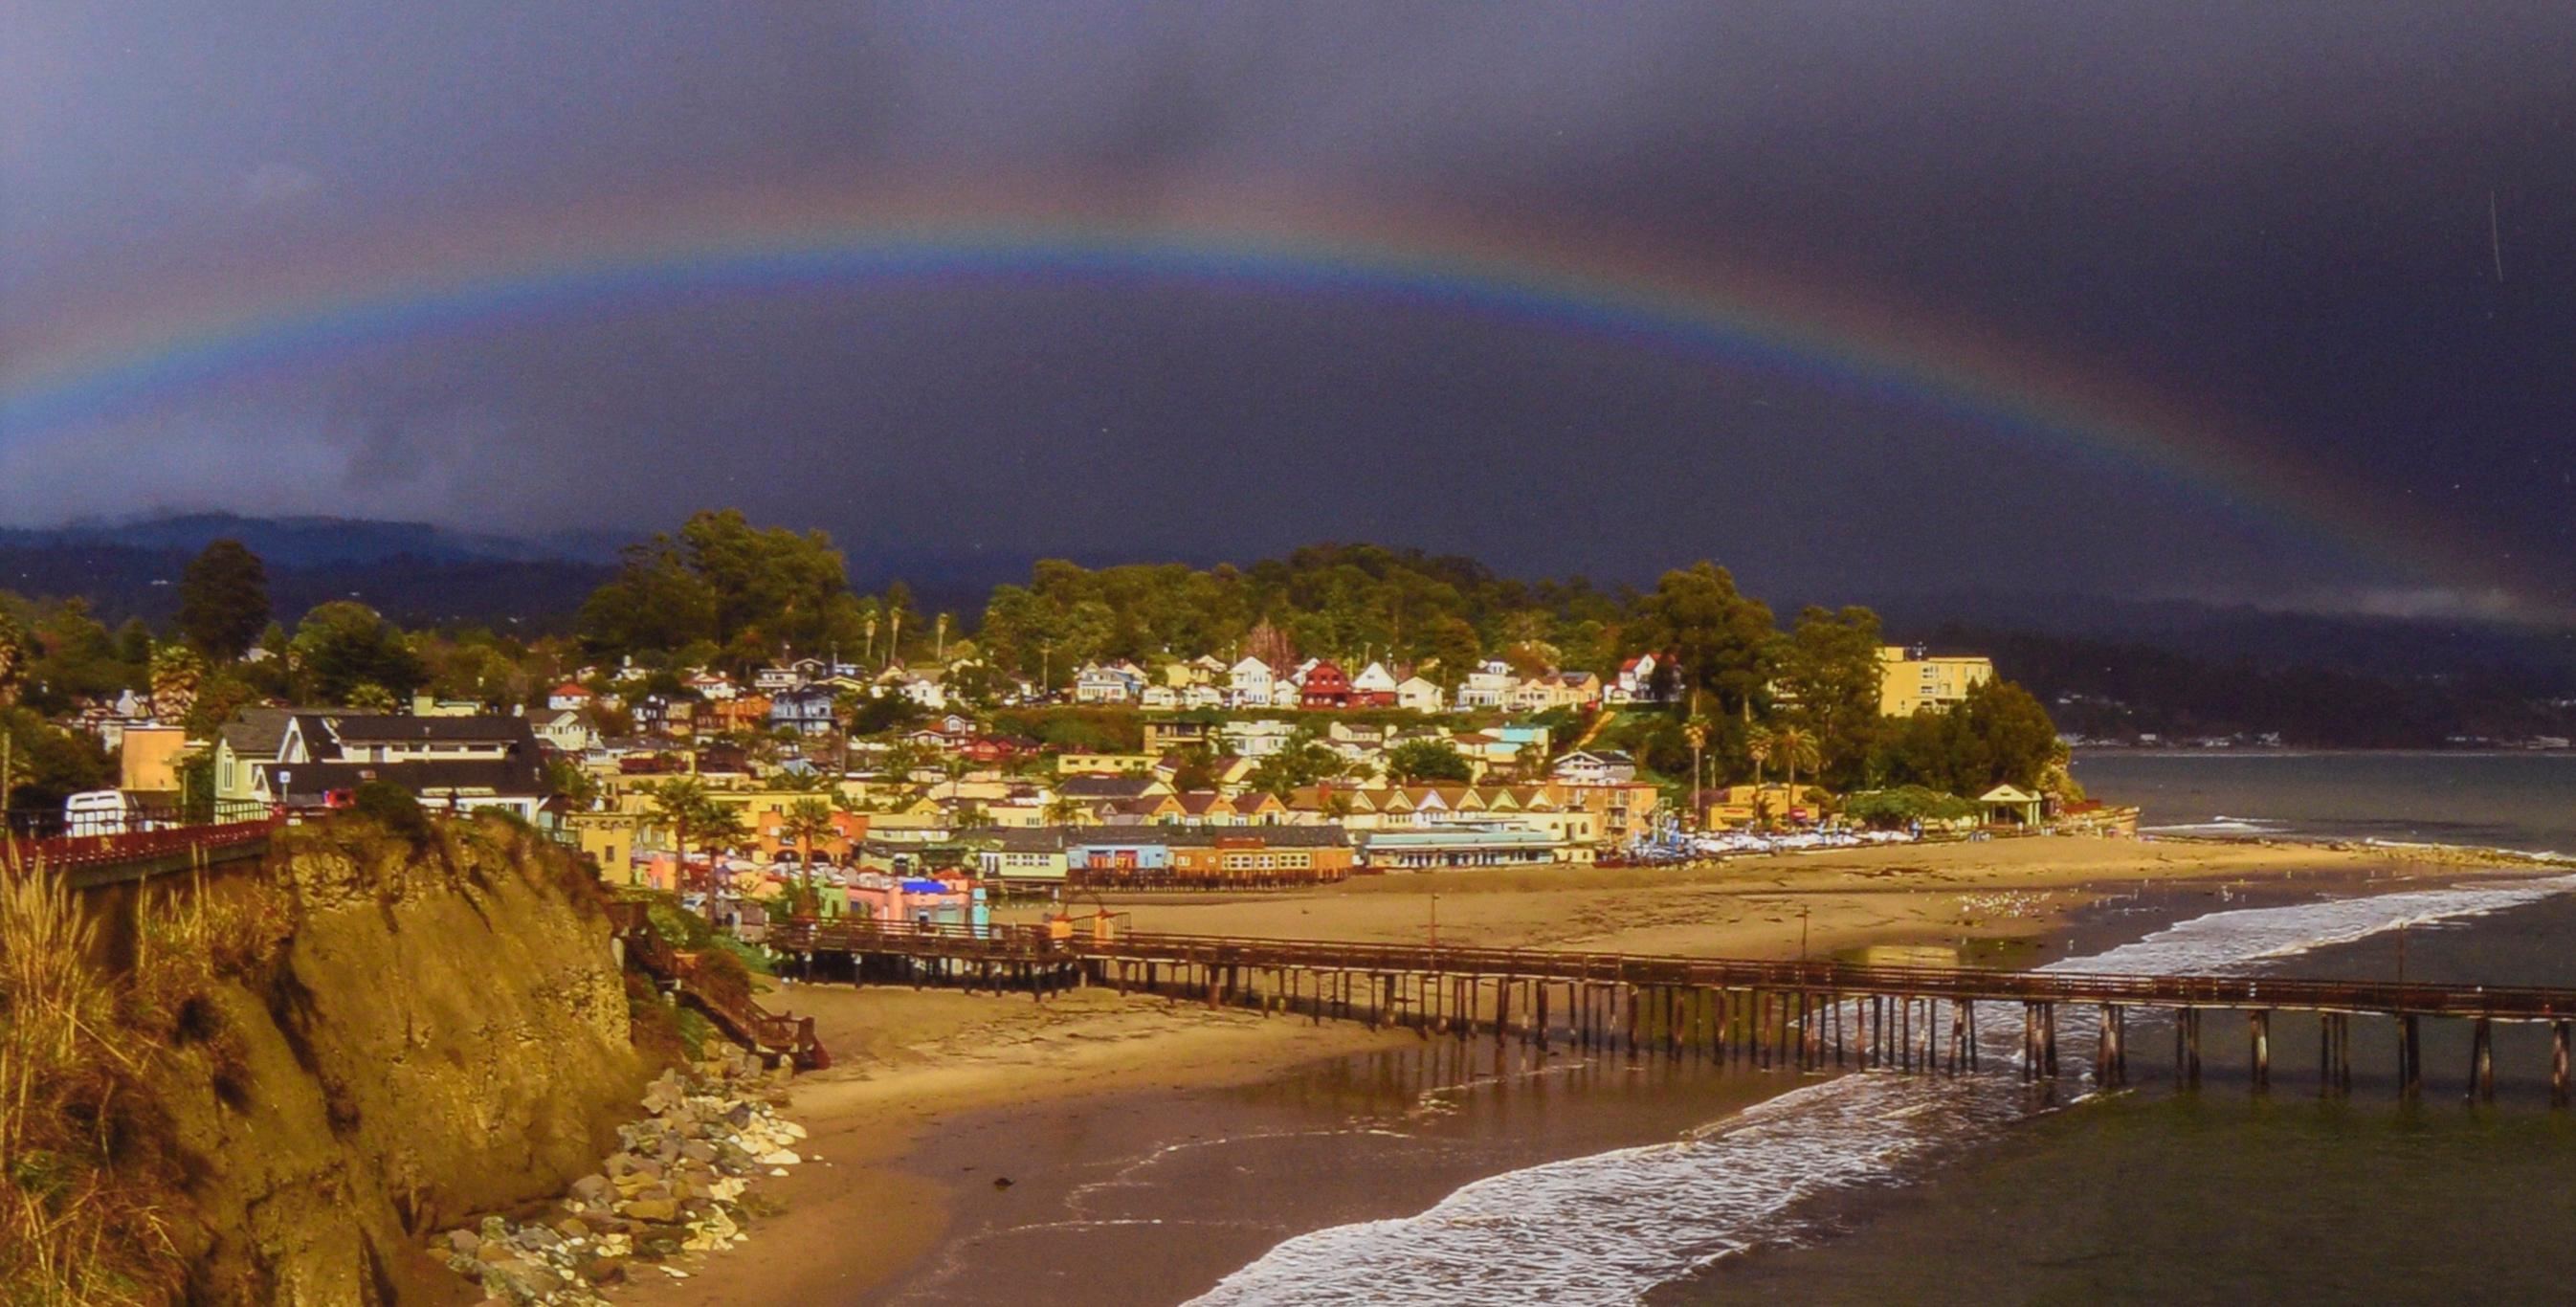 Regenbogen über Capitola Village, Santa Cruz – farbige Fotografie (Realismus), Photograph, von John F. Hunter